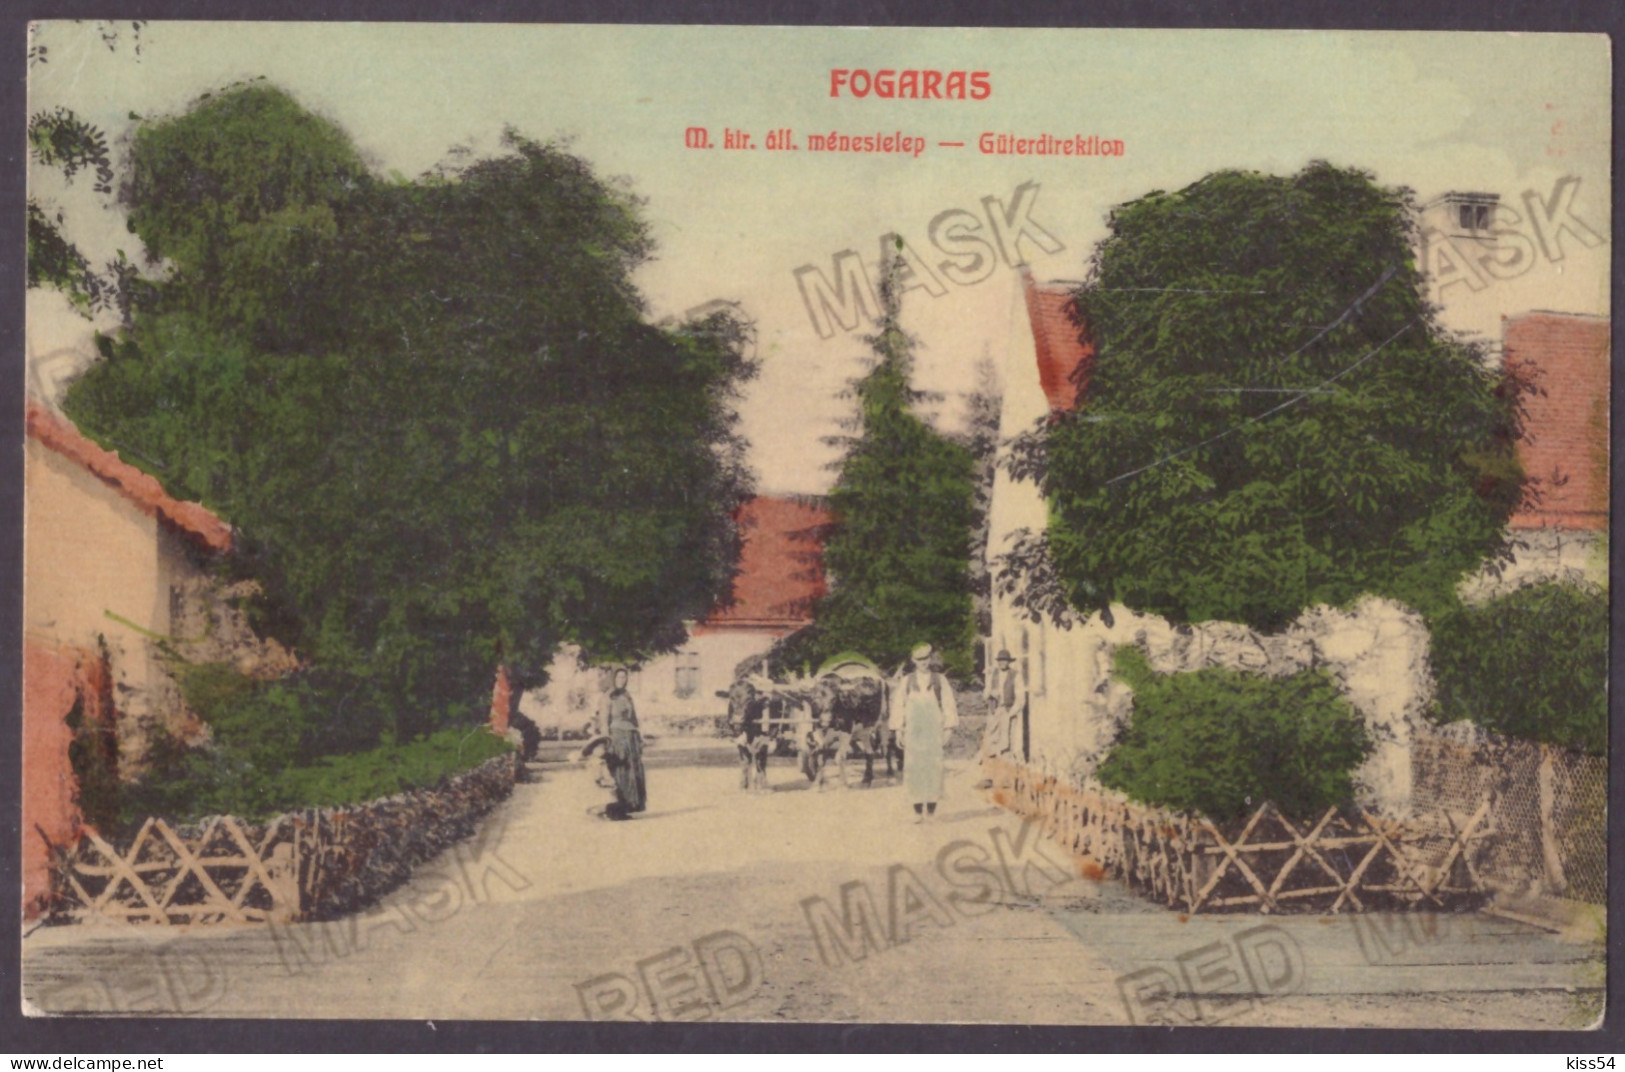 RO 40 - 23116 FAGARAS, Brasov, Romania - Old Postcard - Unused - Rumänien